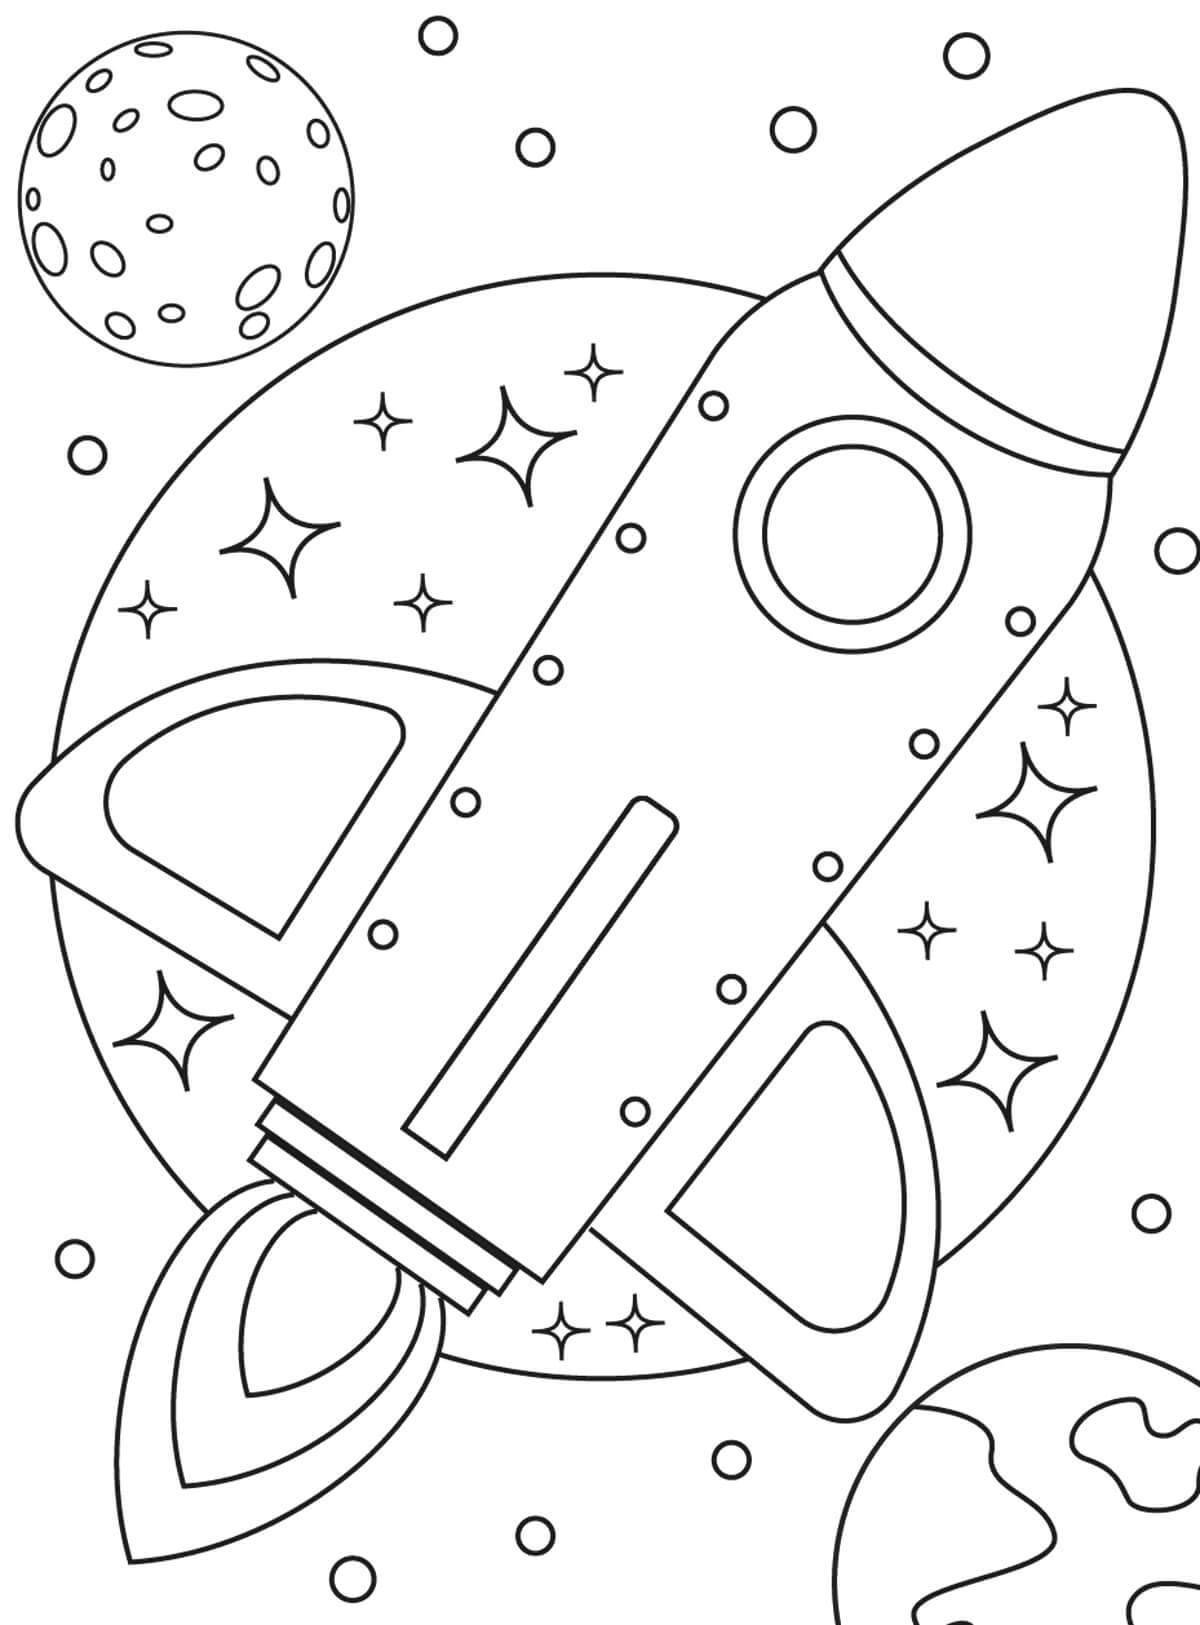 Увлекательная космическая раскраска для детей 3-4 лет